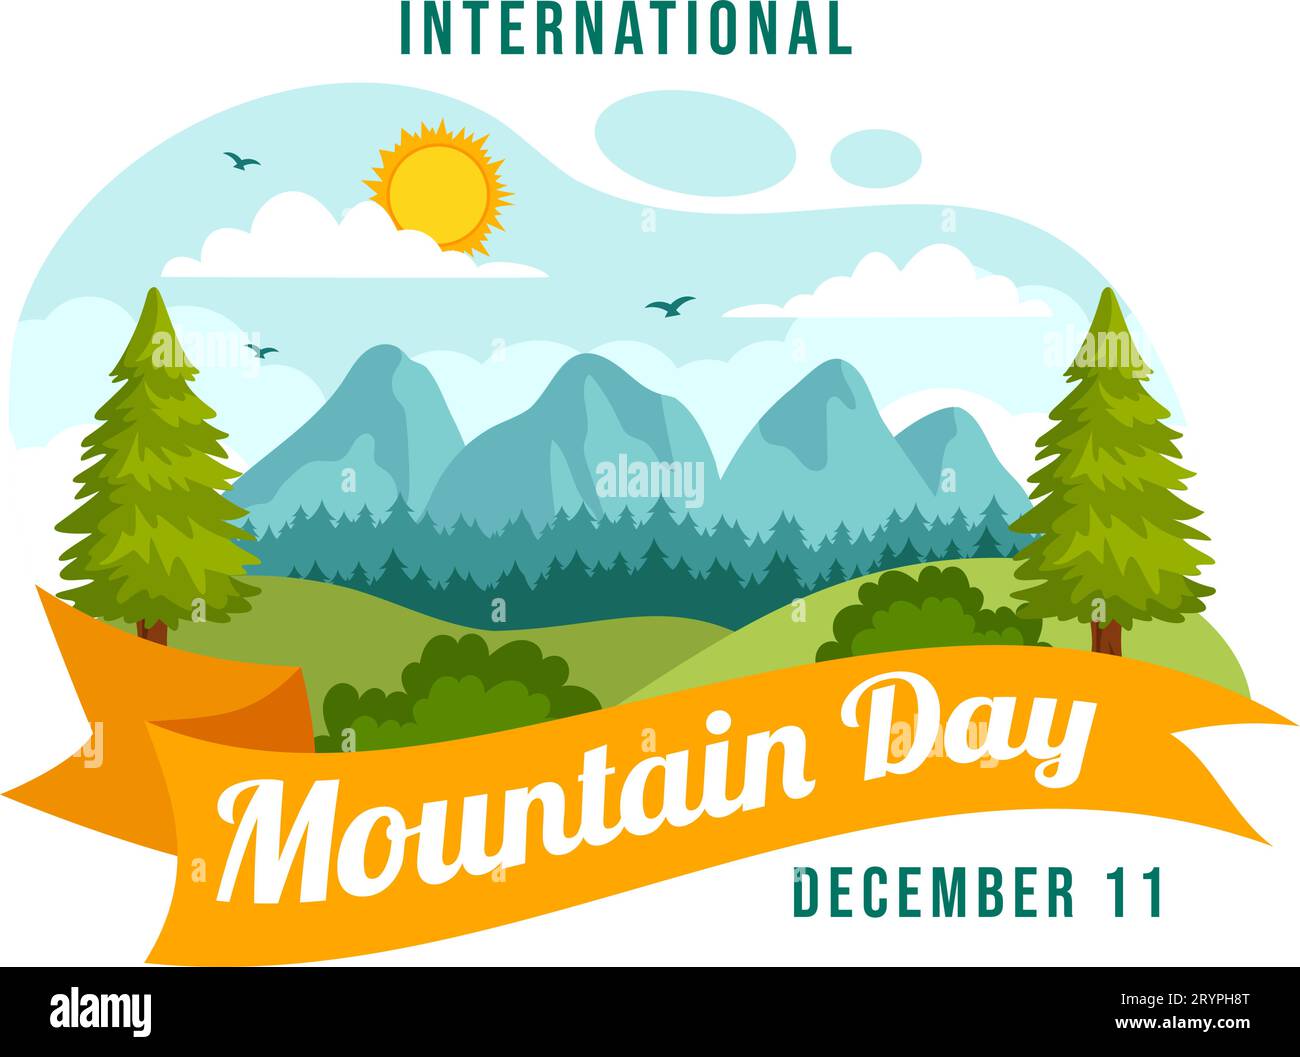 International Mountain Day Vector Illustration am 11. Dezember mit Bergpanorama, Green Valley und Bäumen in Flat Cartoon Hintergrund Design Stock Vektor